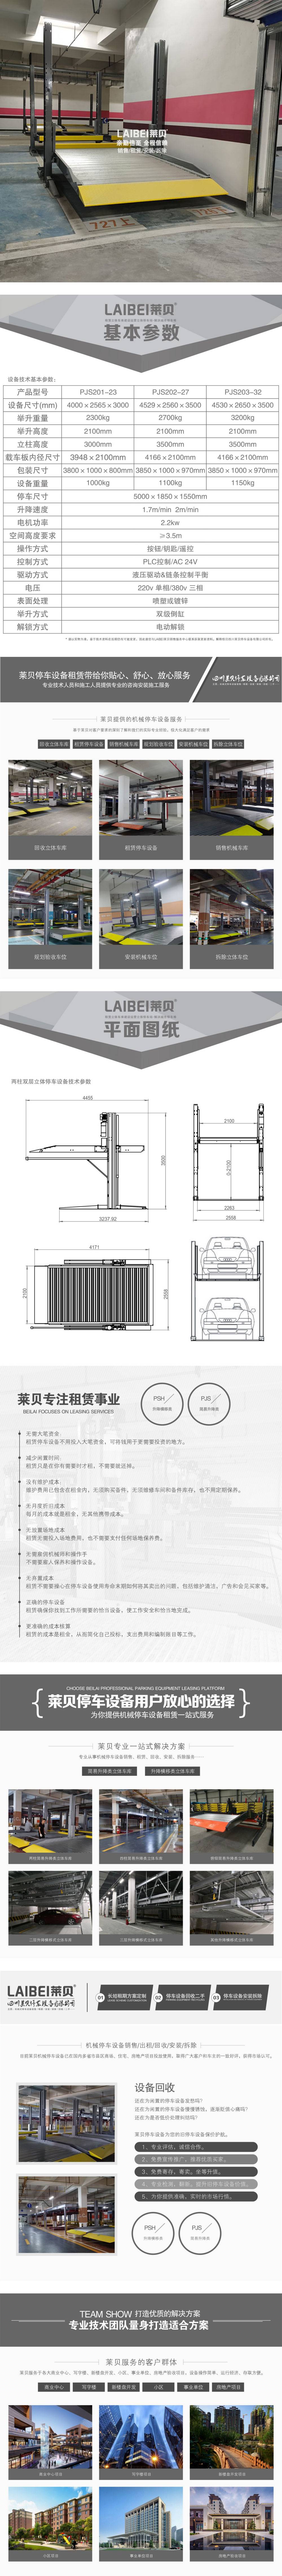 仁寿机械停车租赁 停车位回收 重庆智能停车 自动泊车设备价格 租用家用停车位 2层机械车位二手